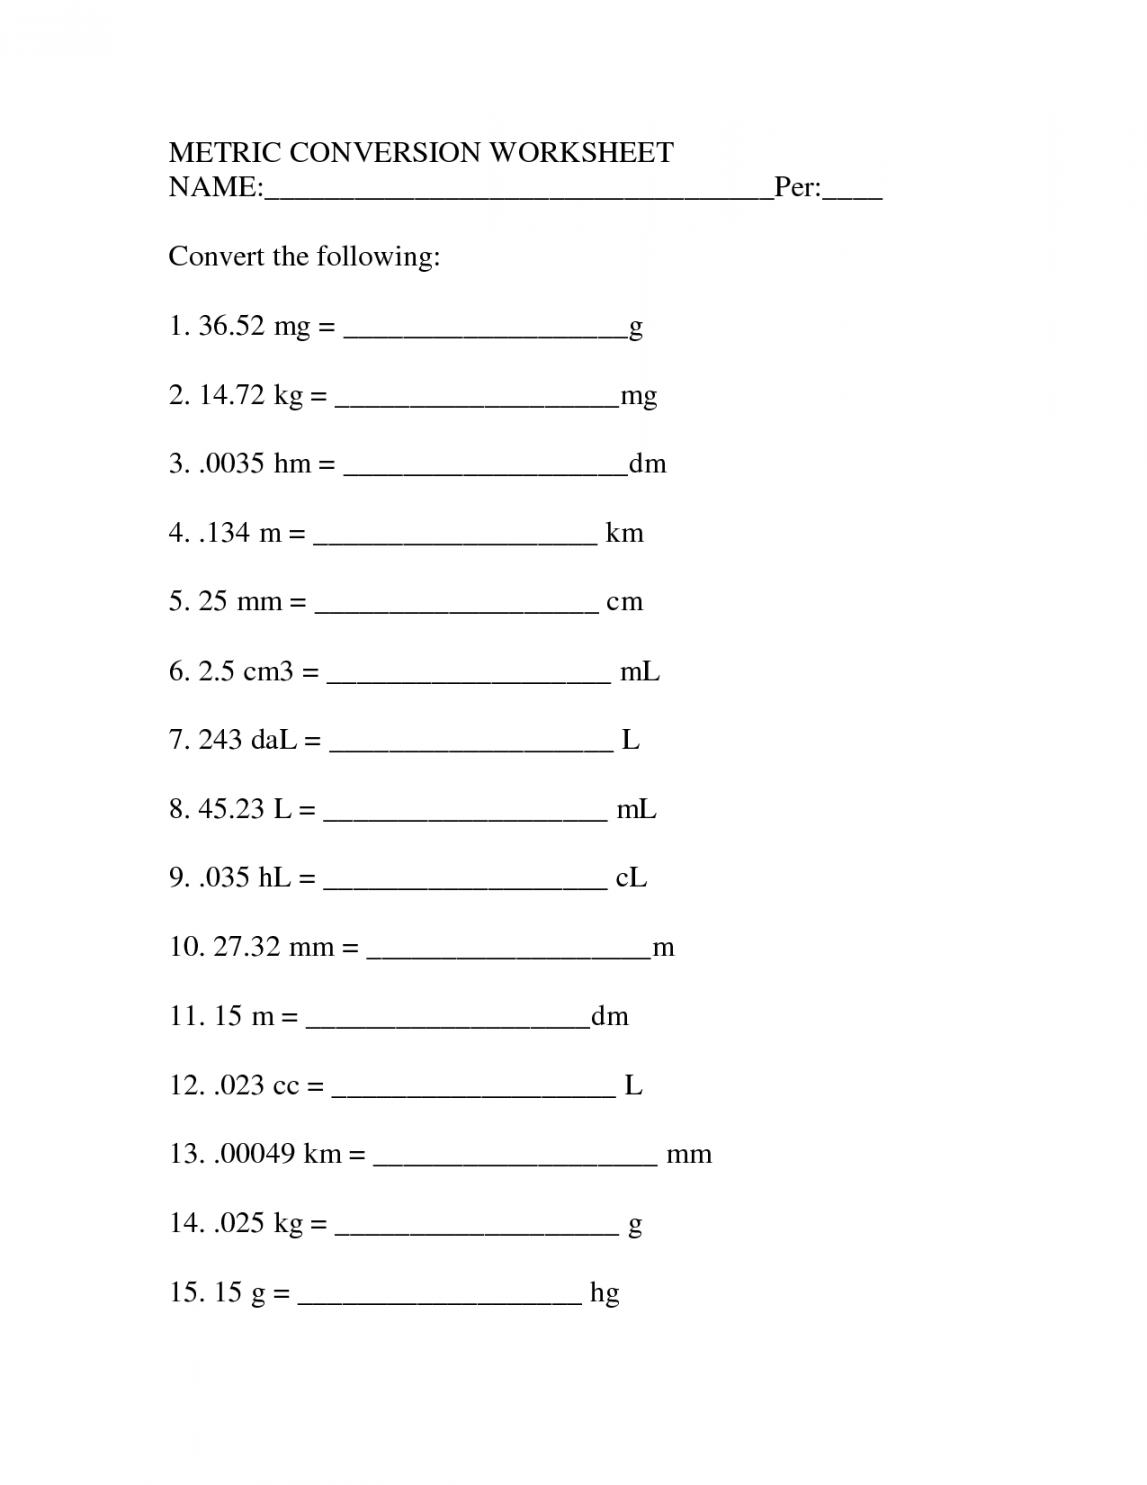 Metric Unit Conversion Worksheet  Measurement worksheets, Metric